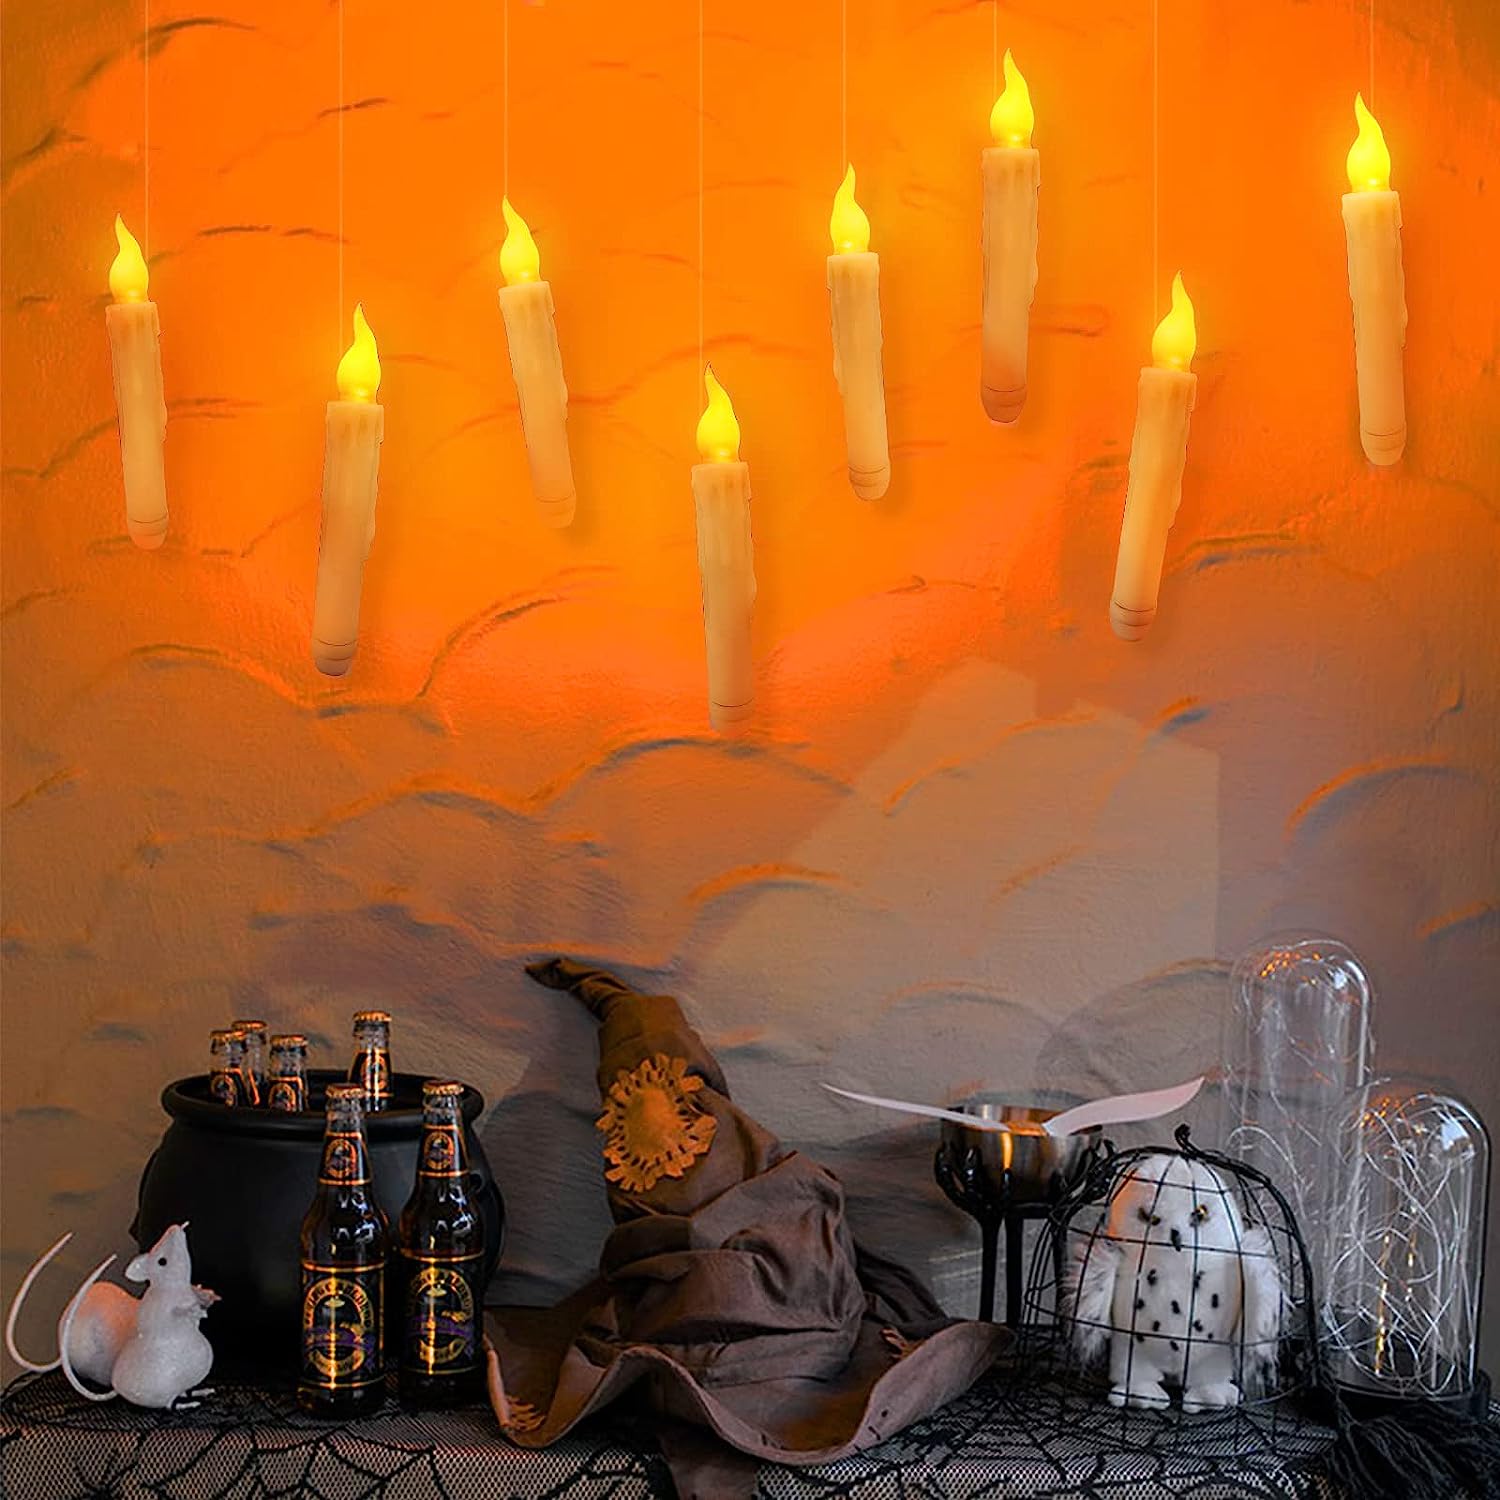 Homemory Velas flotantes con control remoto de varita, 12 velas flotantes  mágicas decoraciones de bruja, velas cónicas amarillas cálidas sin llama